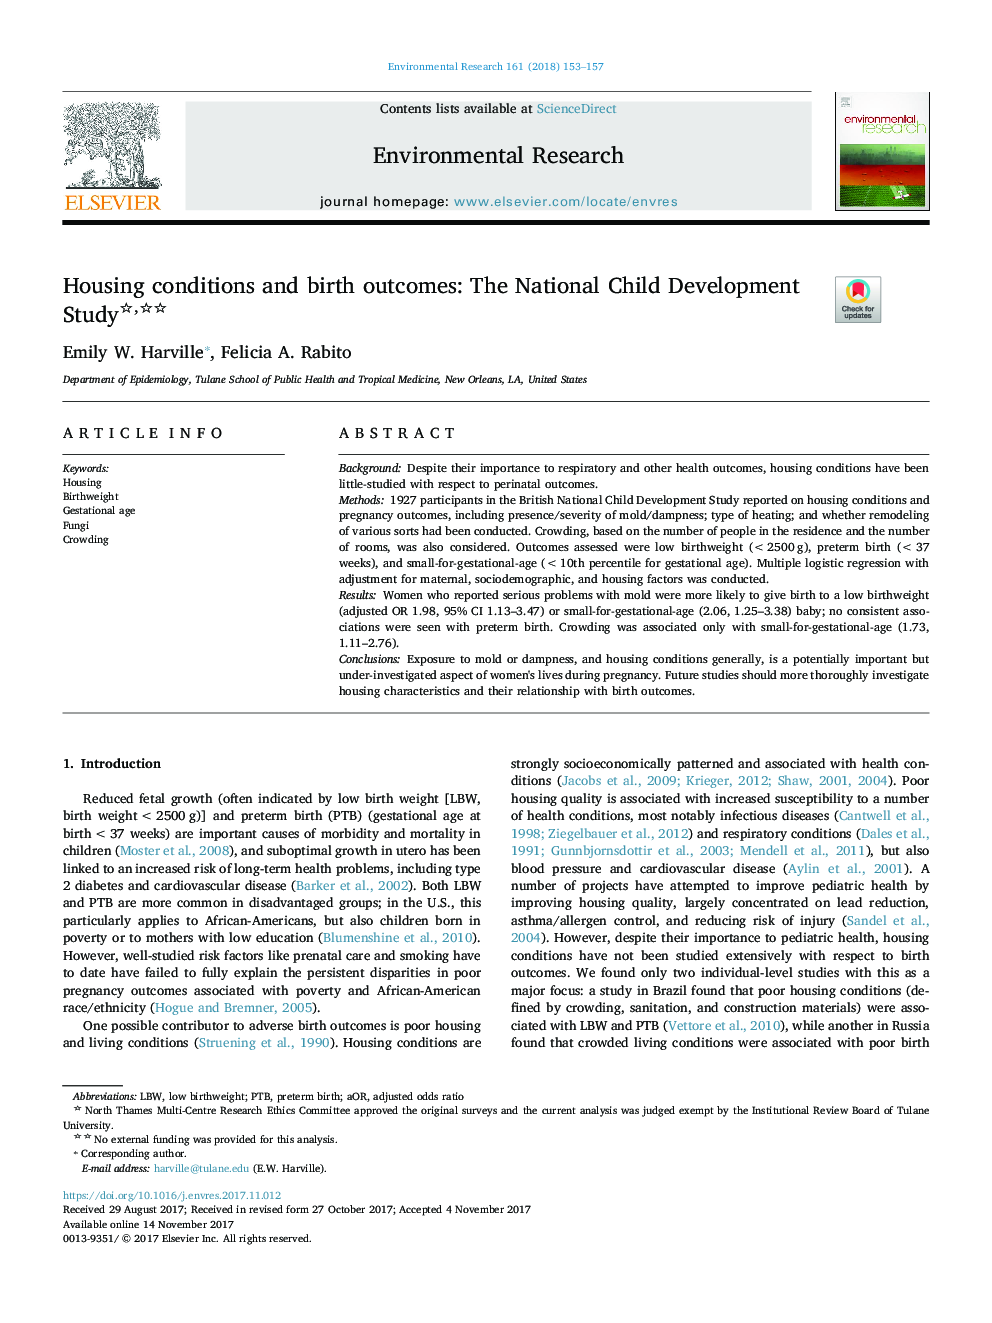 شرایط مسکن و نتایج تولد: مطالعه ملی توسعه کودک 